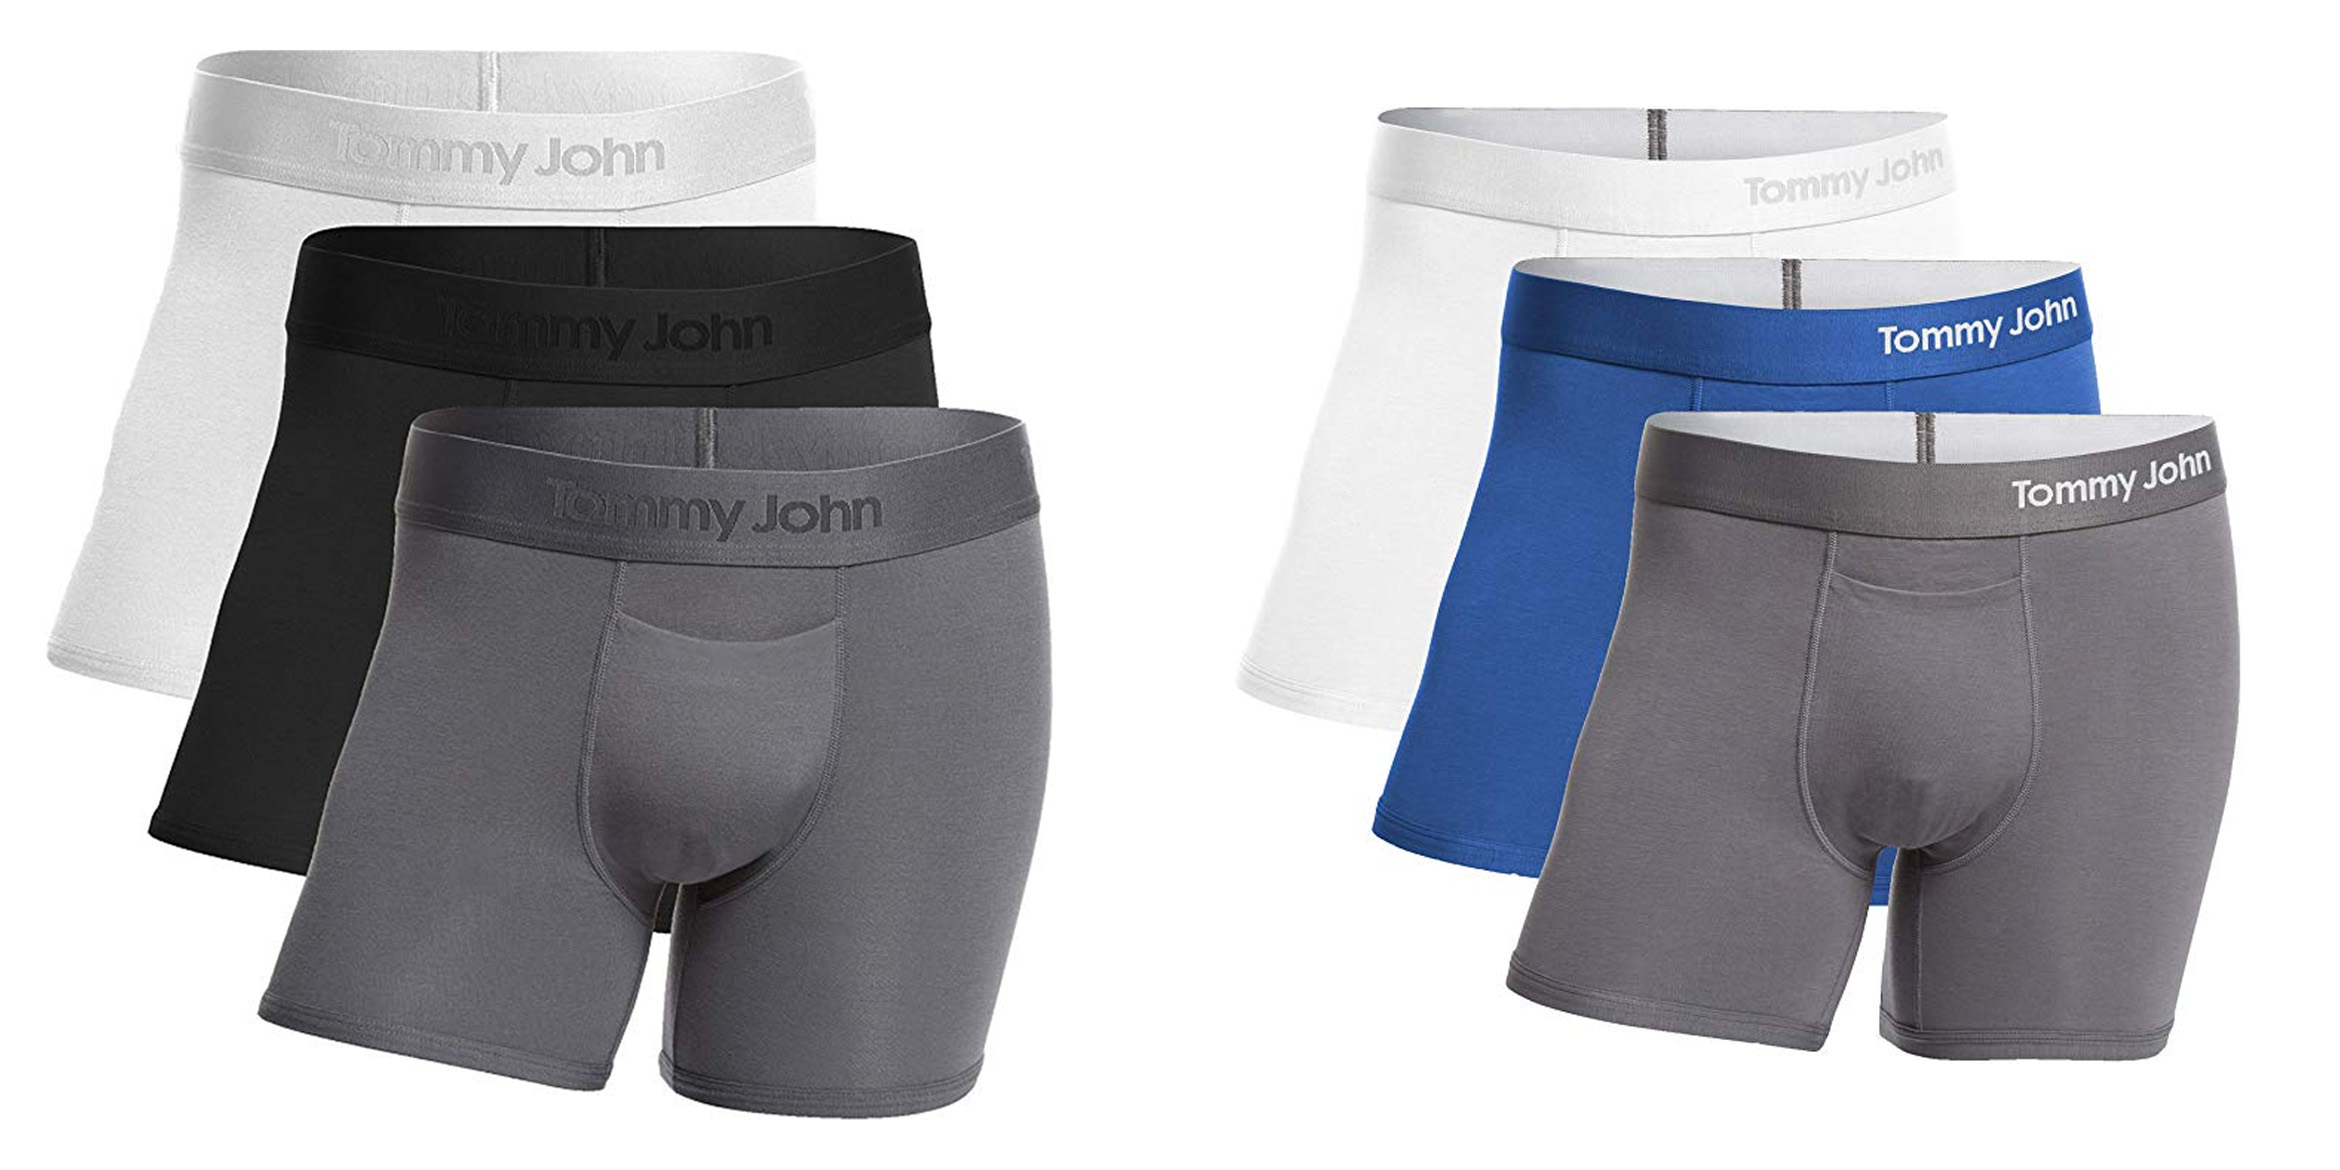 tommy john underwear guarantee